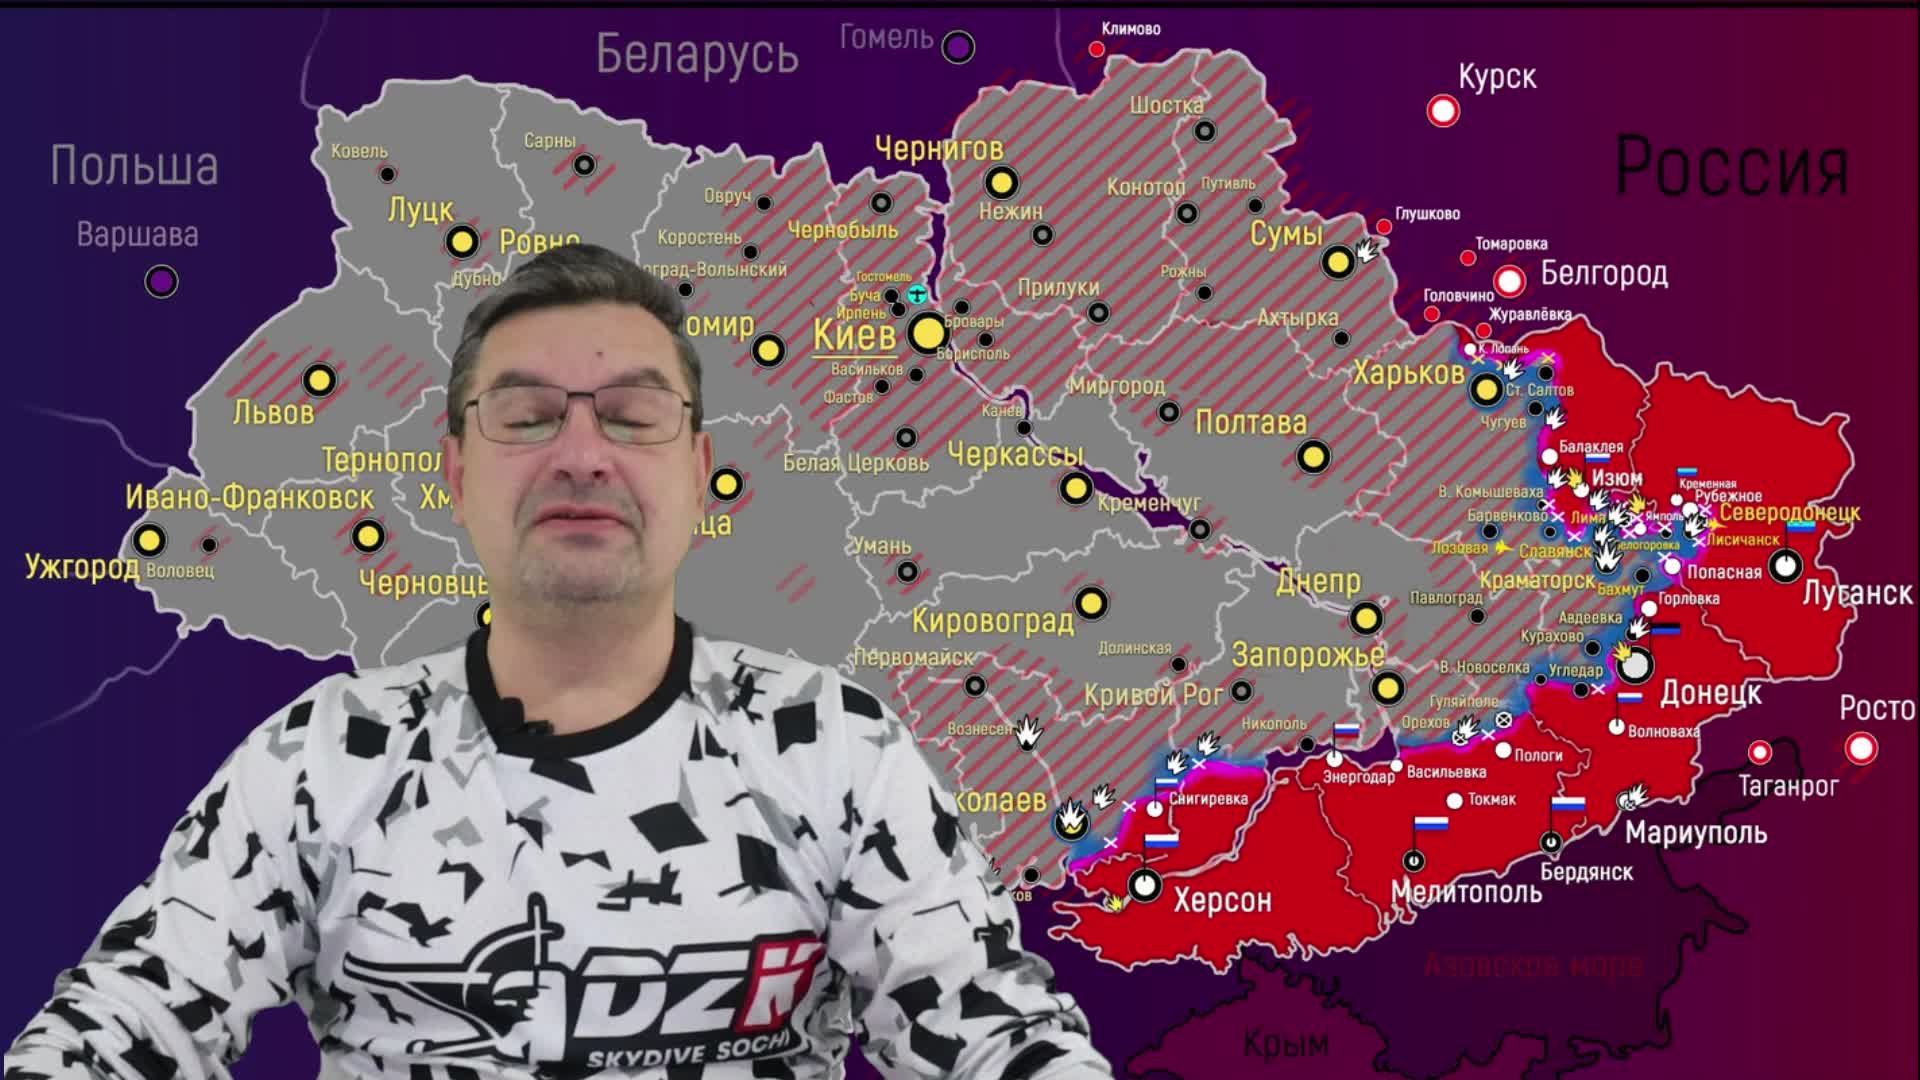 Какие продвижения на украине. Карт войны на Украине. Карта войны на Украине. Карта войны на Украине 9 мая.